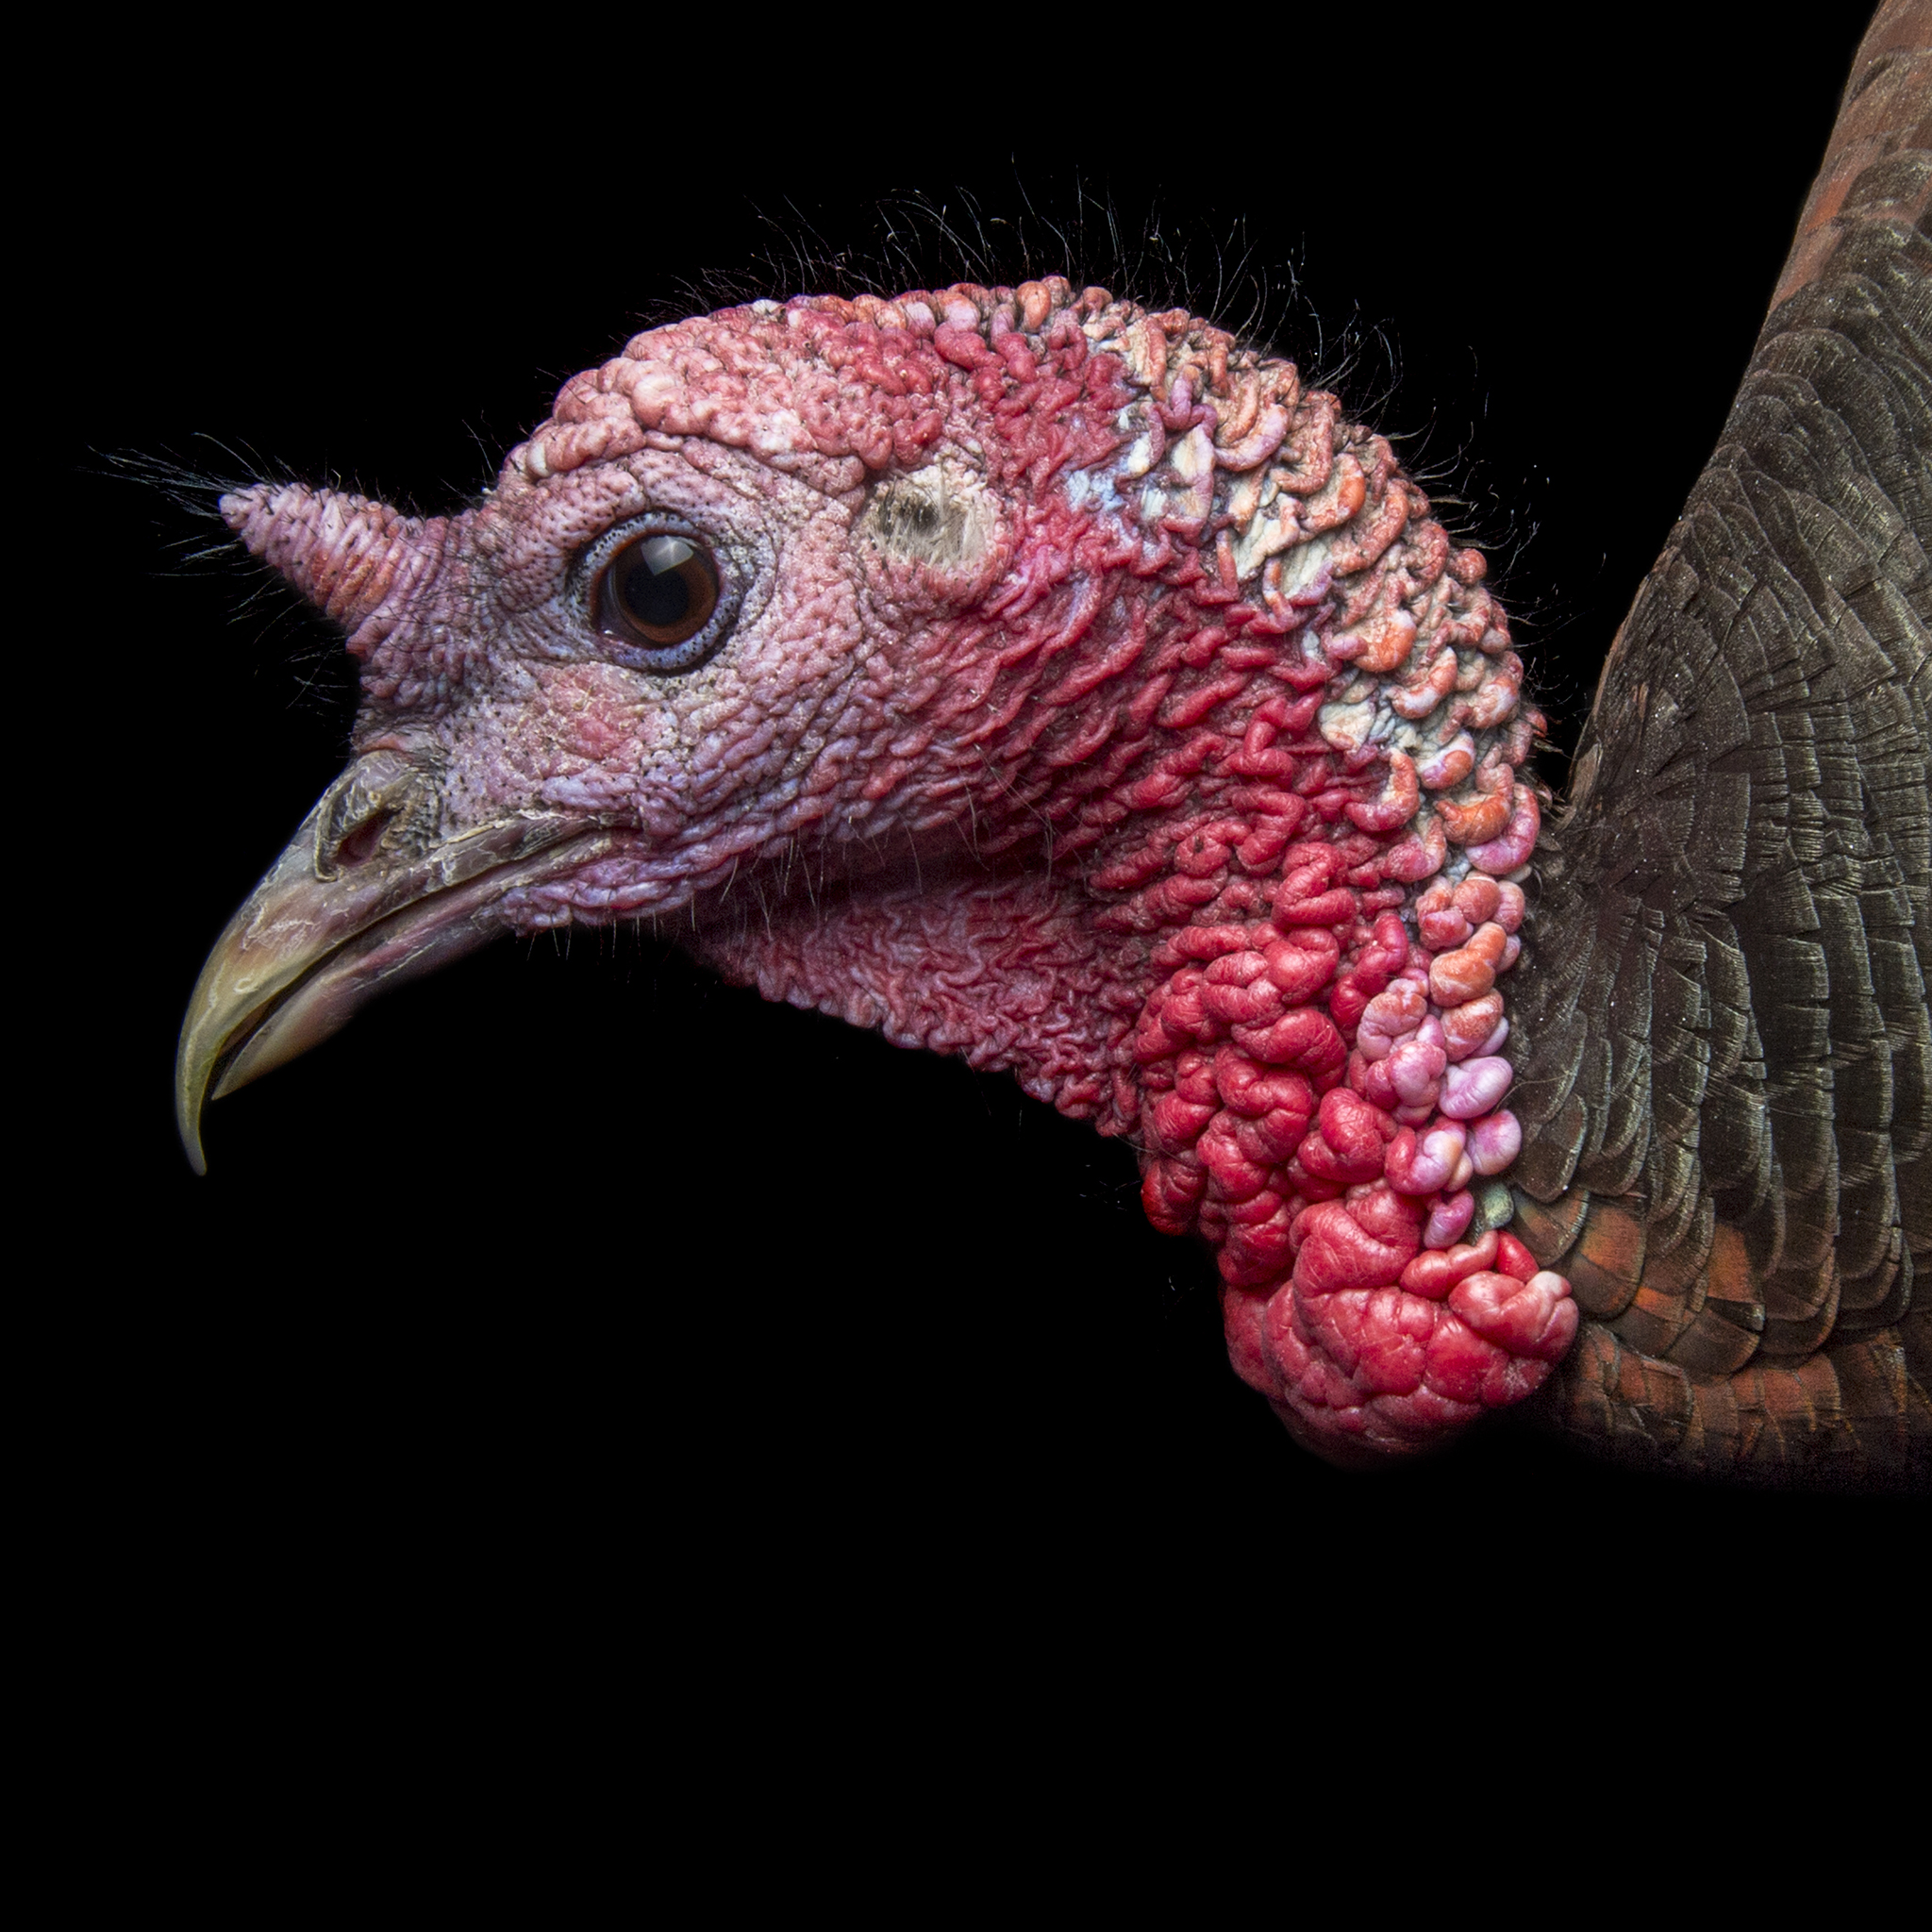 Wild Turkey | National Geographic